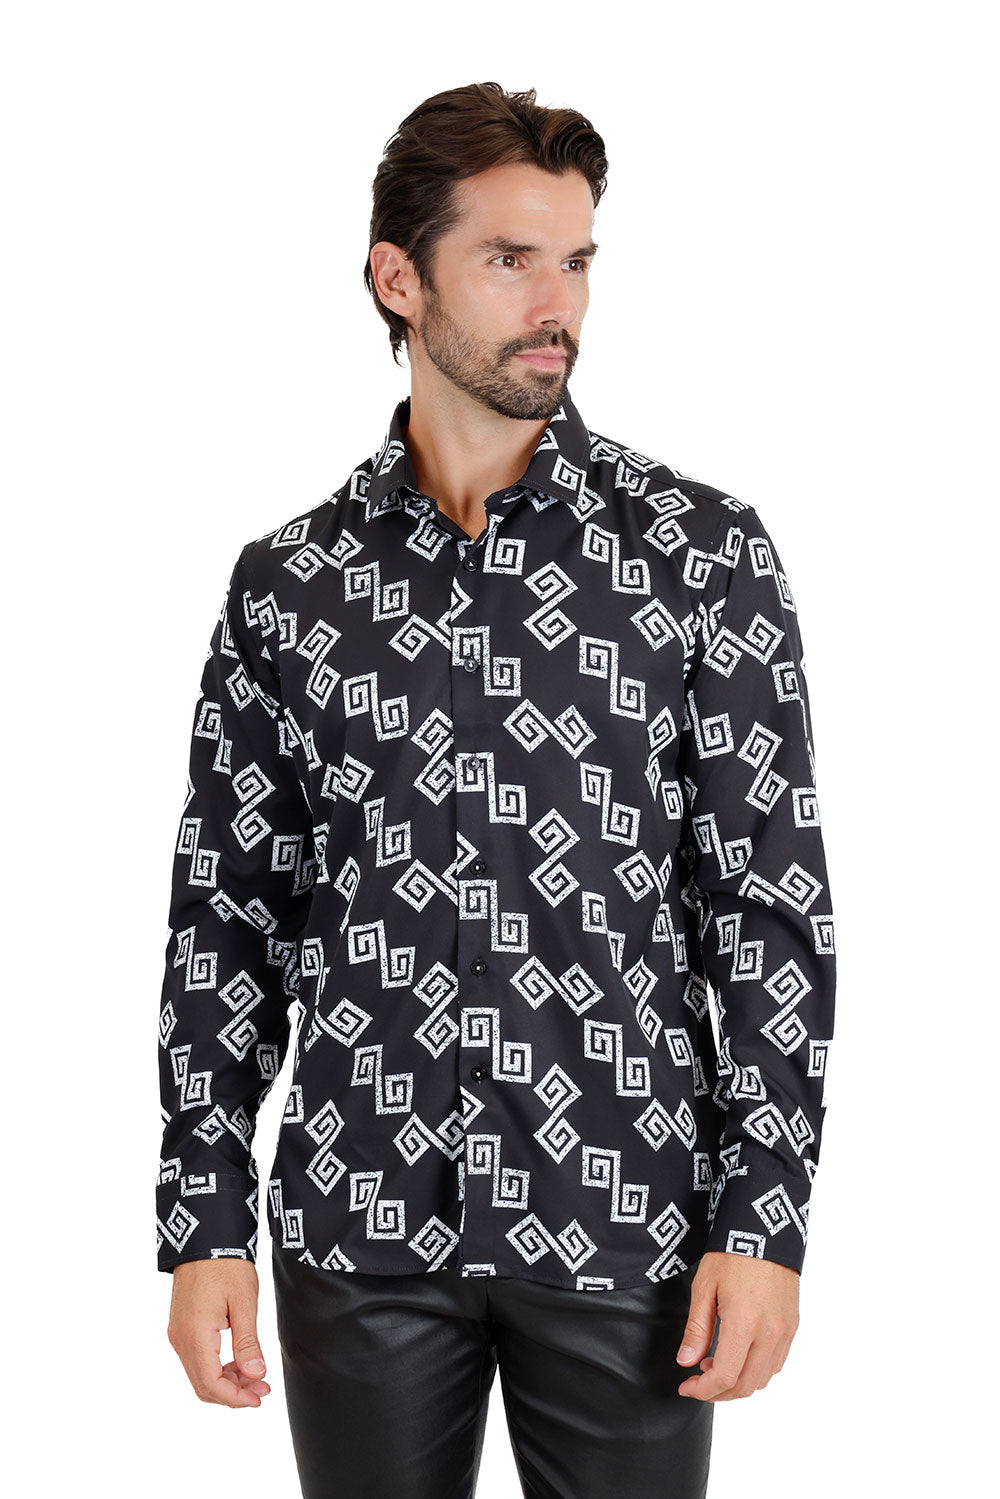 Vassari Men's Greek Key Pattern Geometric Long Sleeve Shirts 3VS11 Black